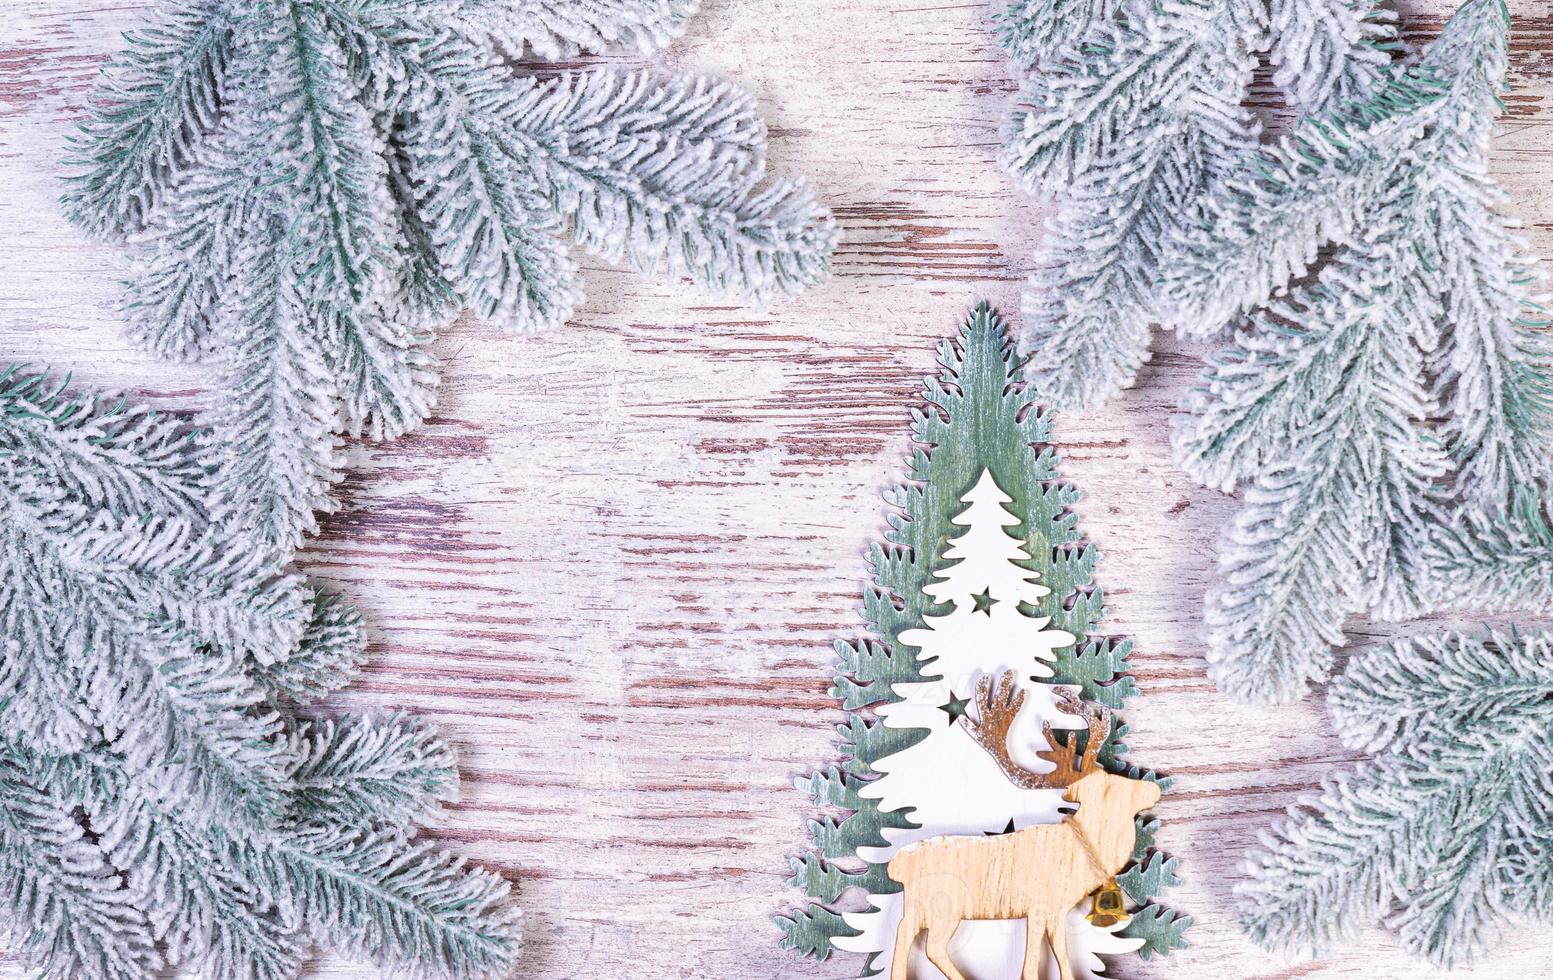 composición navideña con hermosa decoración, árbol de navidad y corona, ciervos, regalos y accesorios en una decoración casera moderna. foto